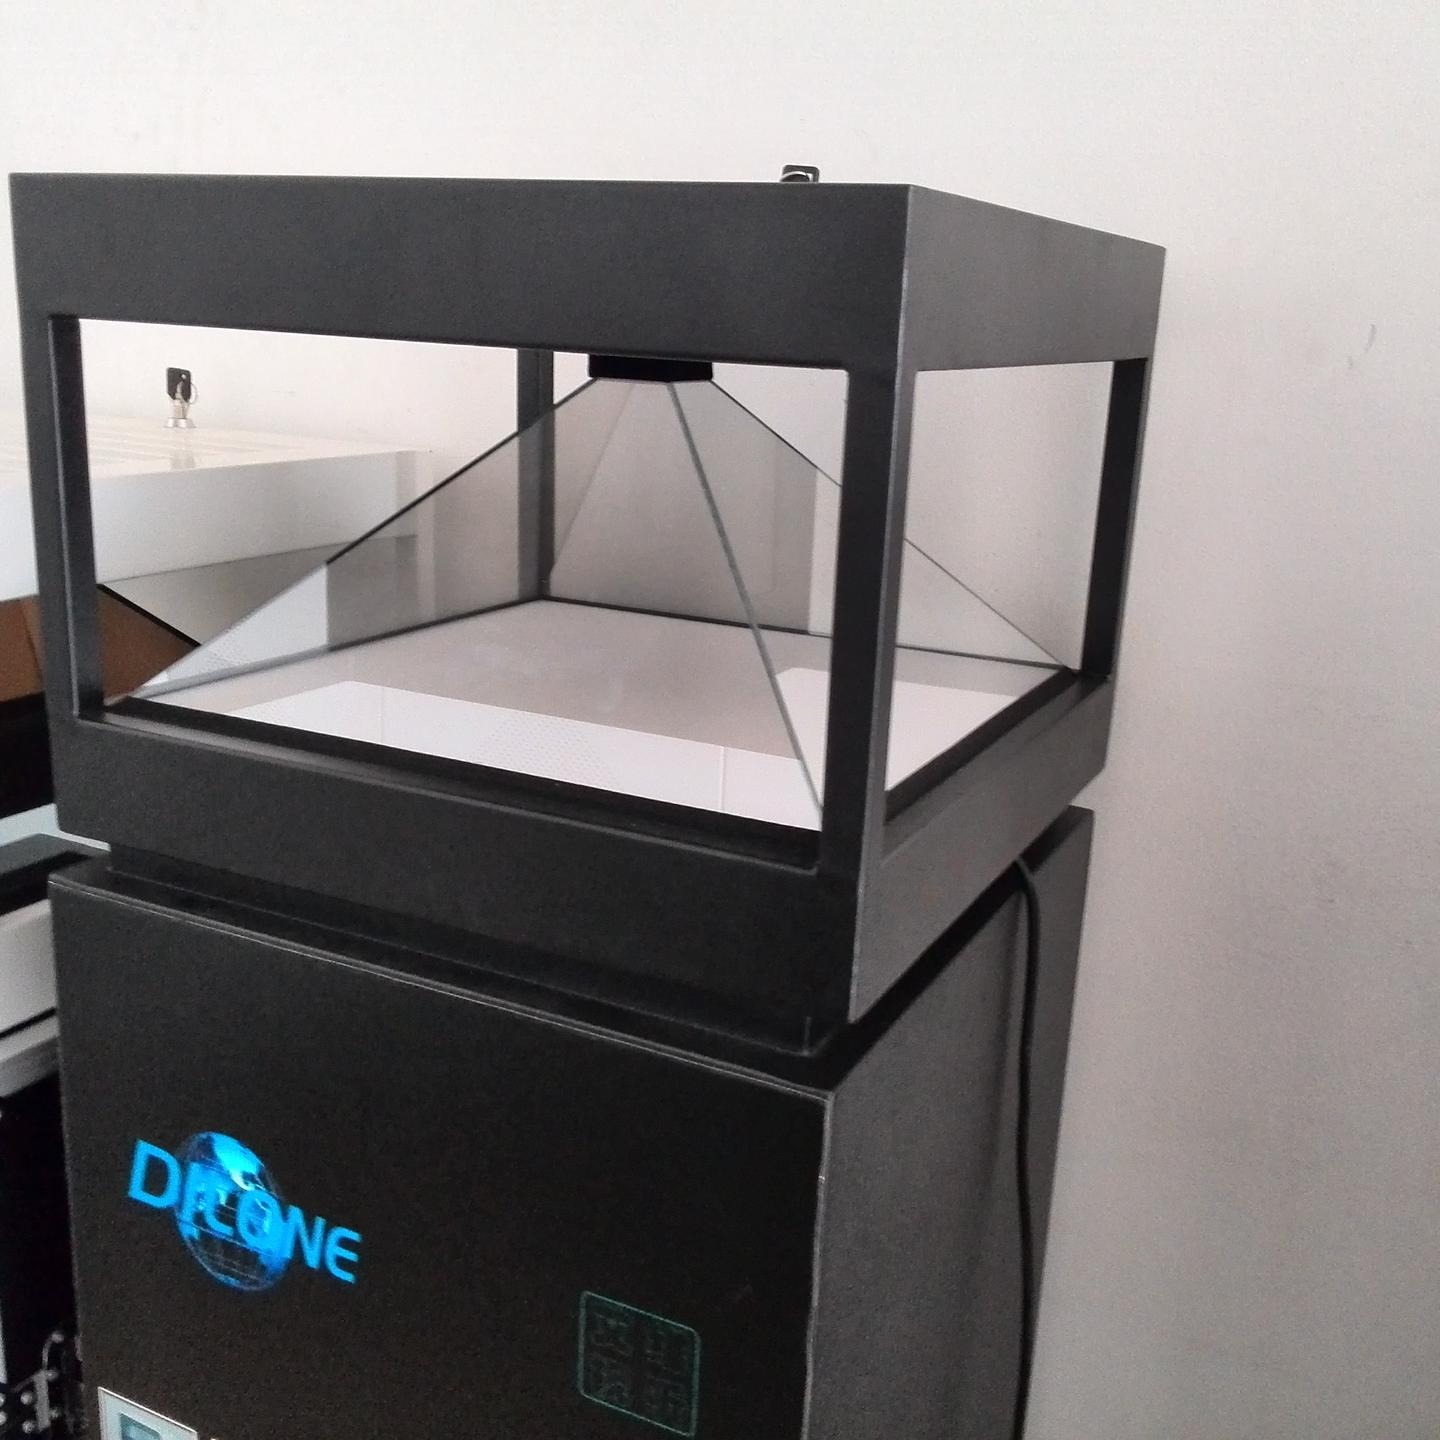 深圳工厂DILONE全息3D展示柜 立体成像 3D全息投影 裸眼立体 化妆品展示柜 全息投影展柜广告机 全息设备图片